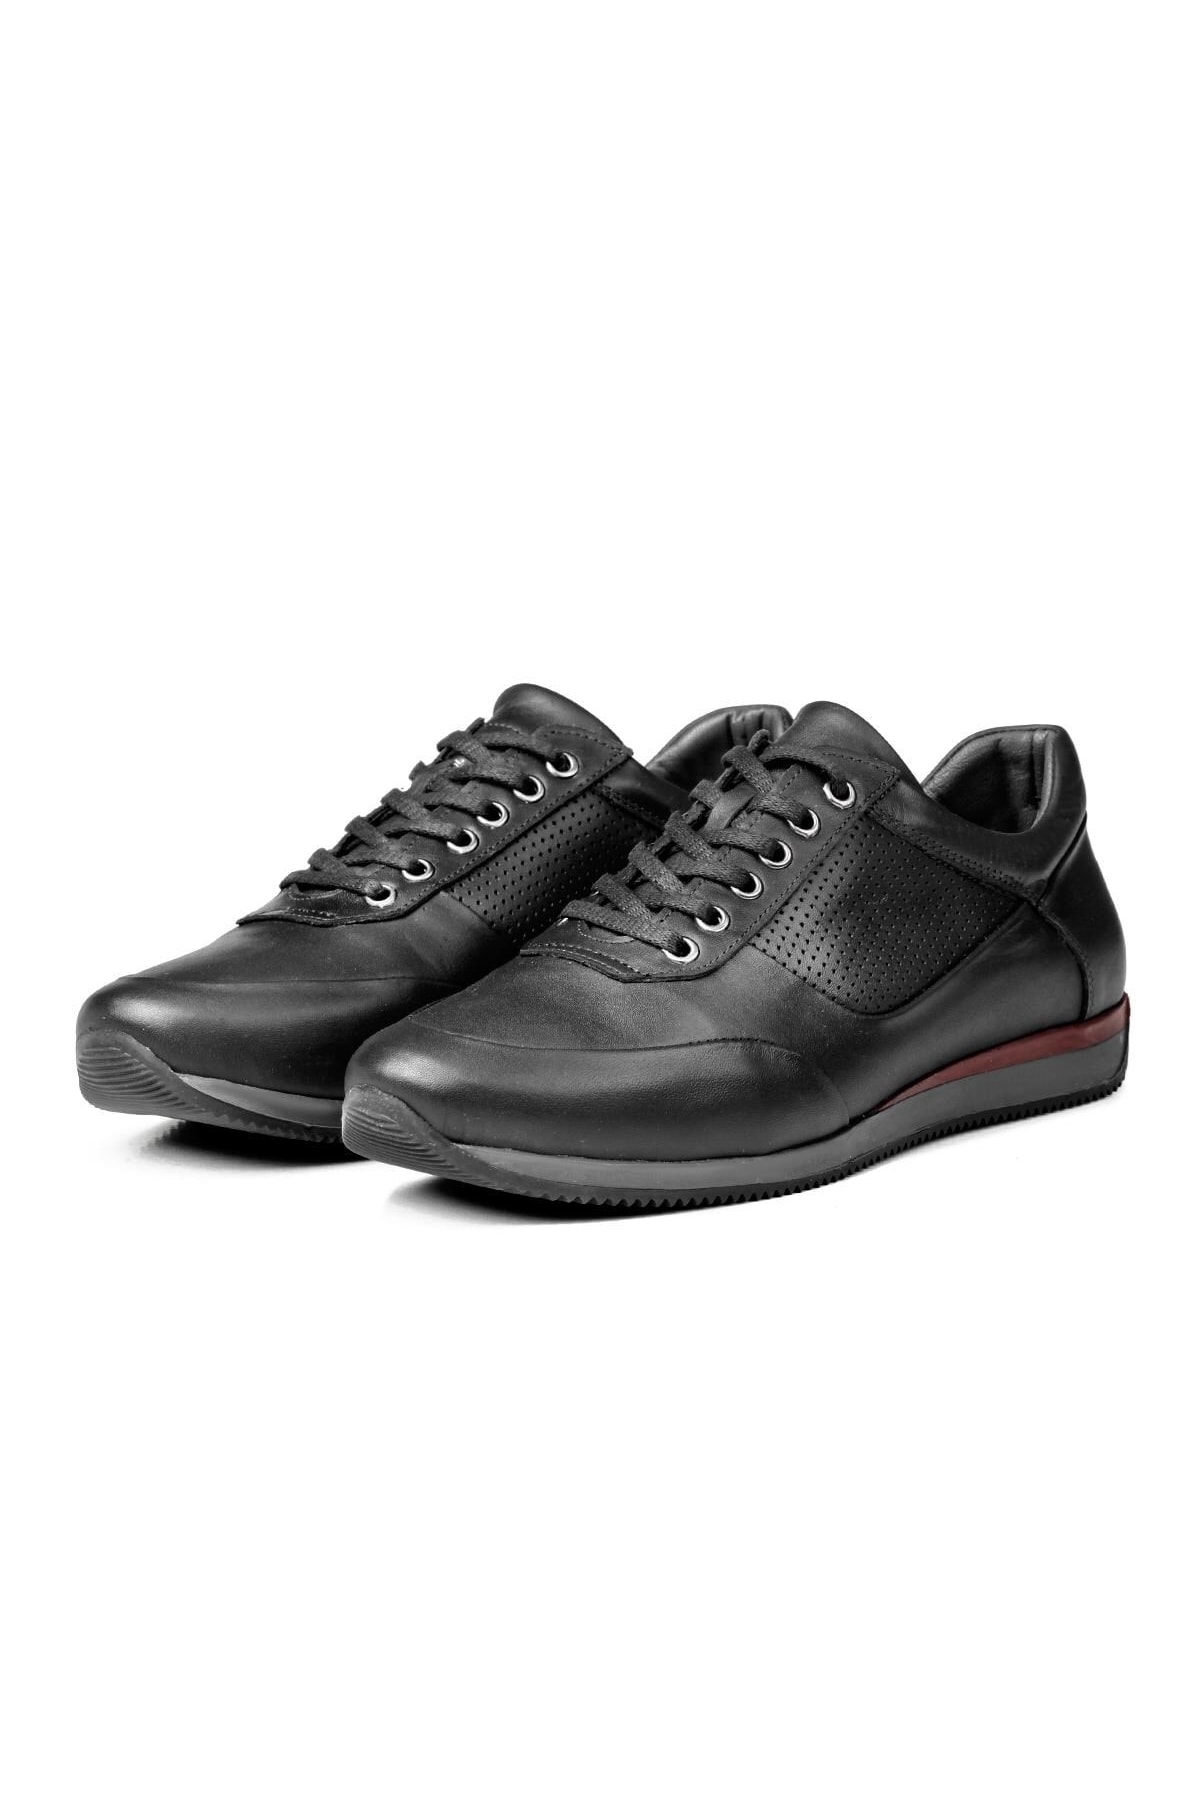 Levně Ducavelli Lion Point Genuine Leather Plush Shearling Men's Casual Shoes Black.